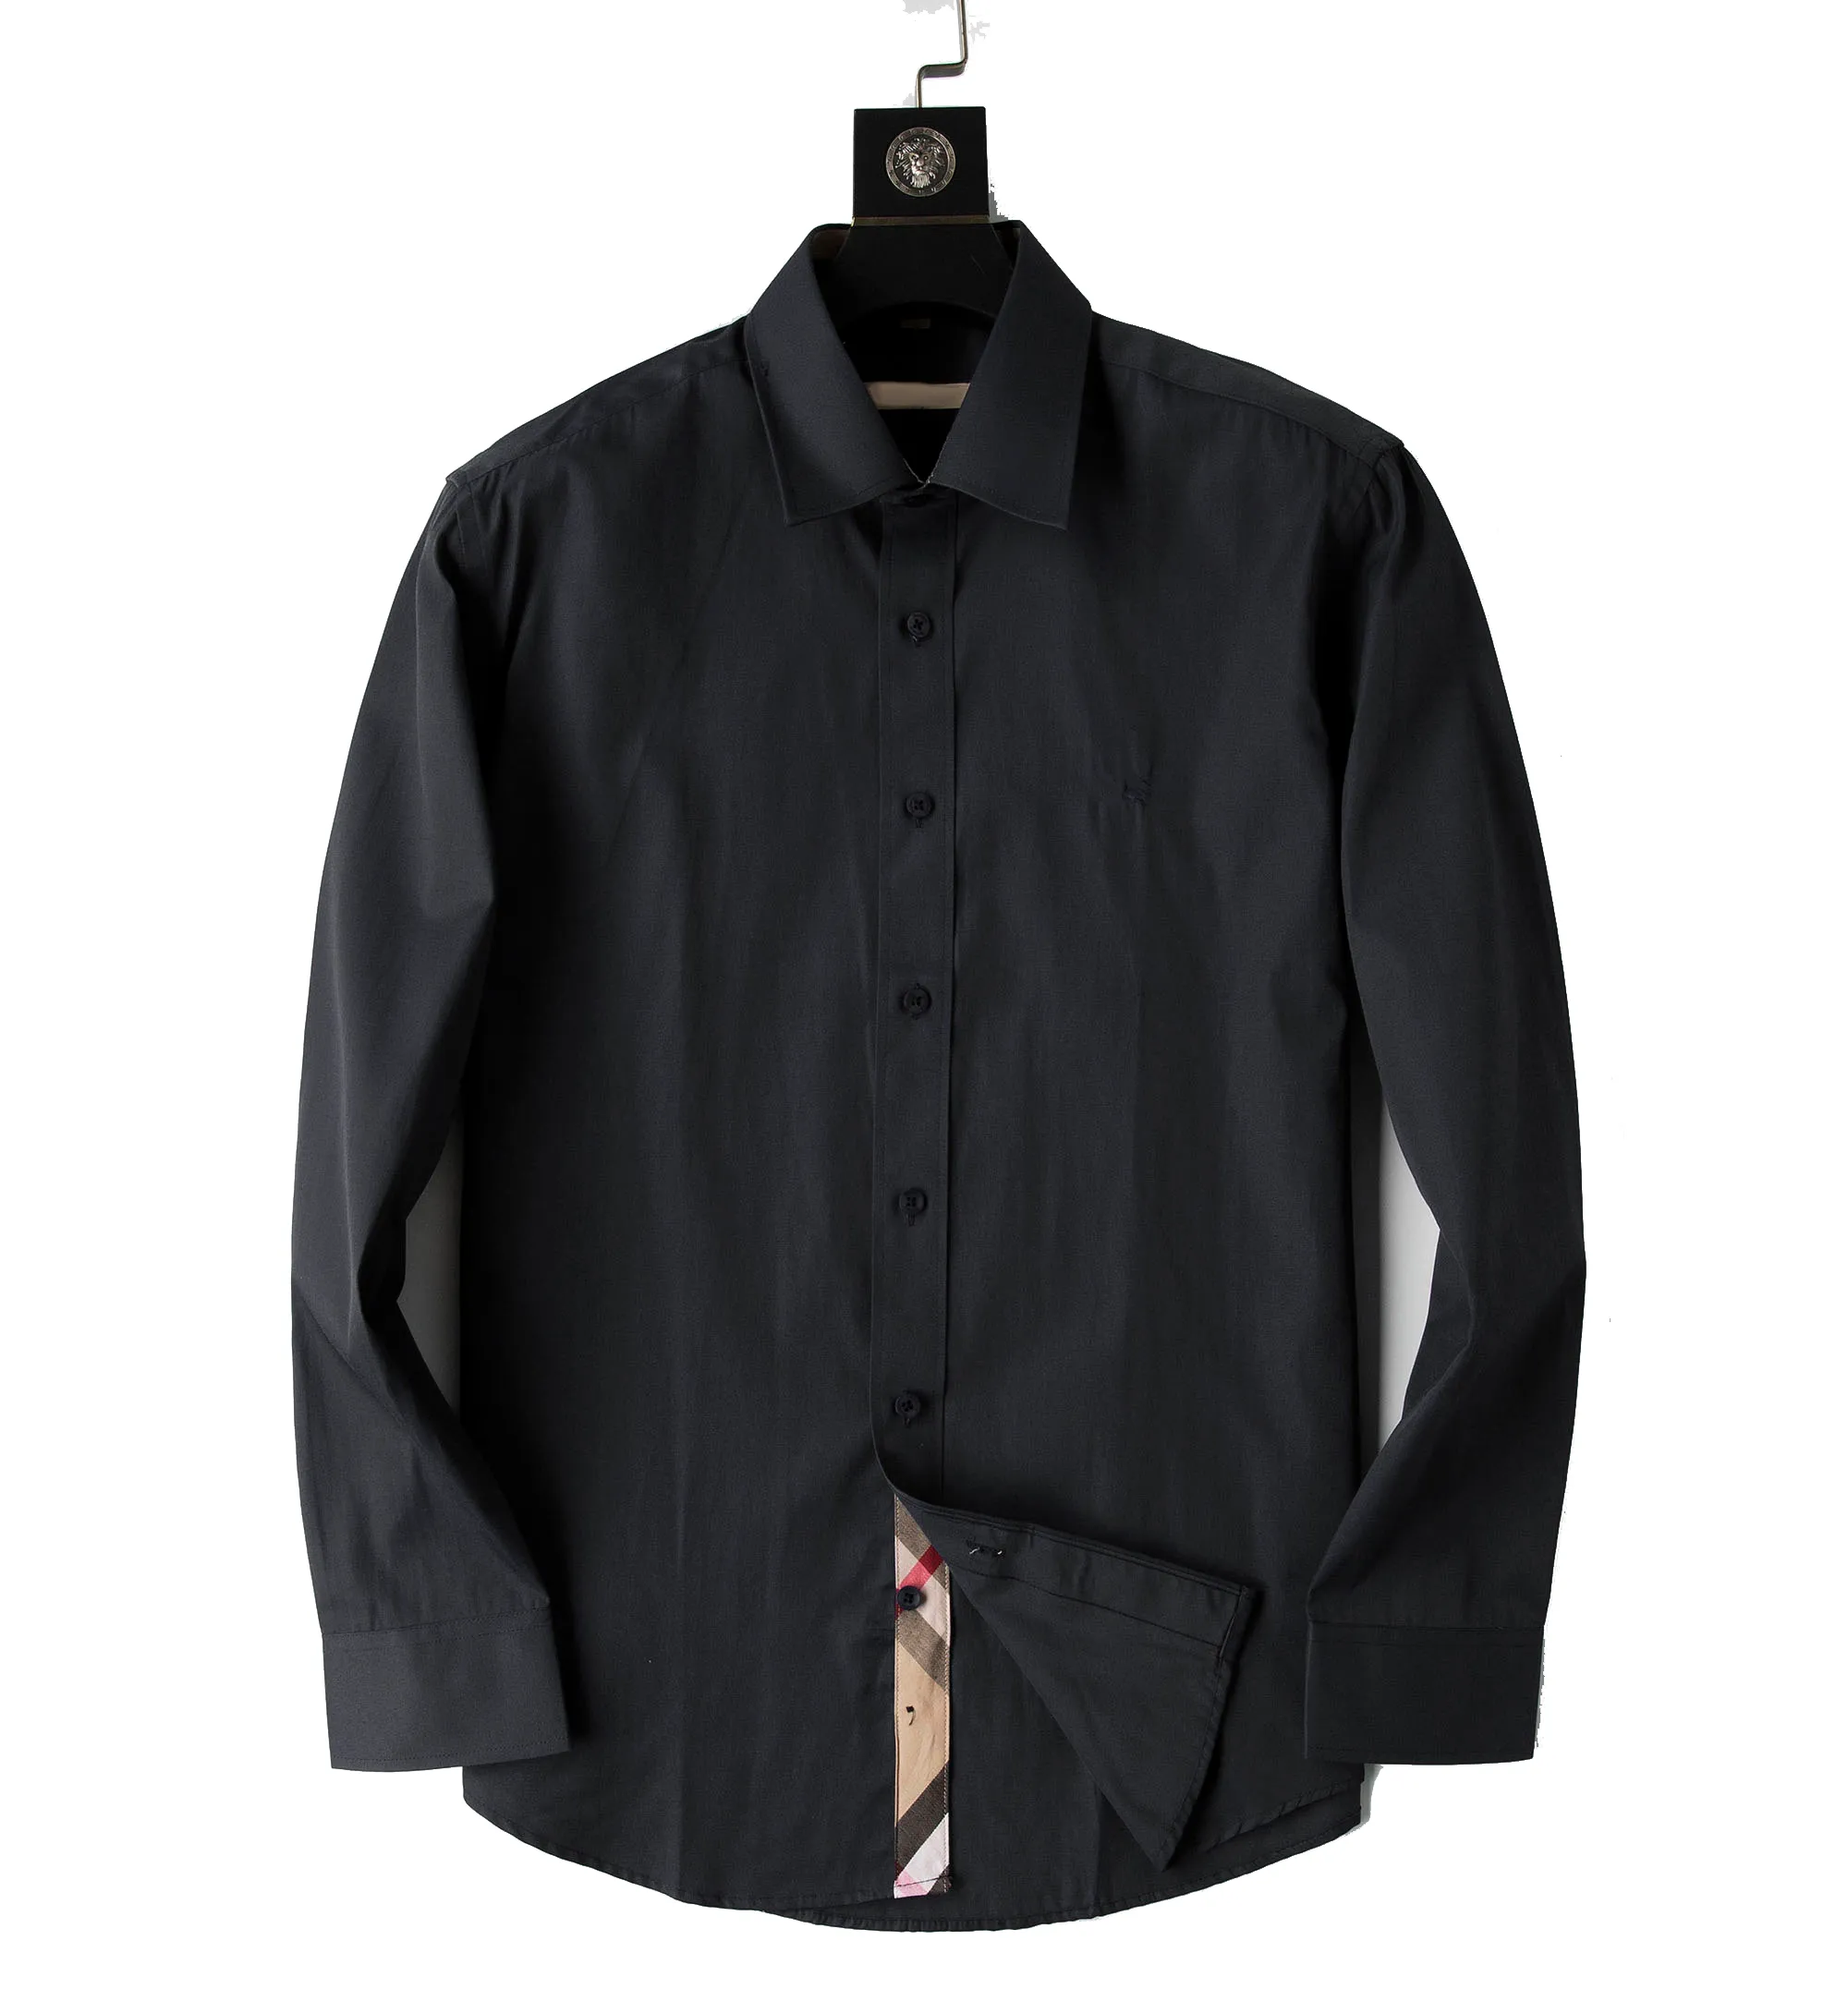 2021 Erkek Gömlek Luxurys Tasarımcılar Moda Erkek Giyim Casual bussiness Gömleksa Klasik Erkek Gömlekler Erkekler Uzun Kollu Marka Modası İlkbahar M-3XL#01